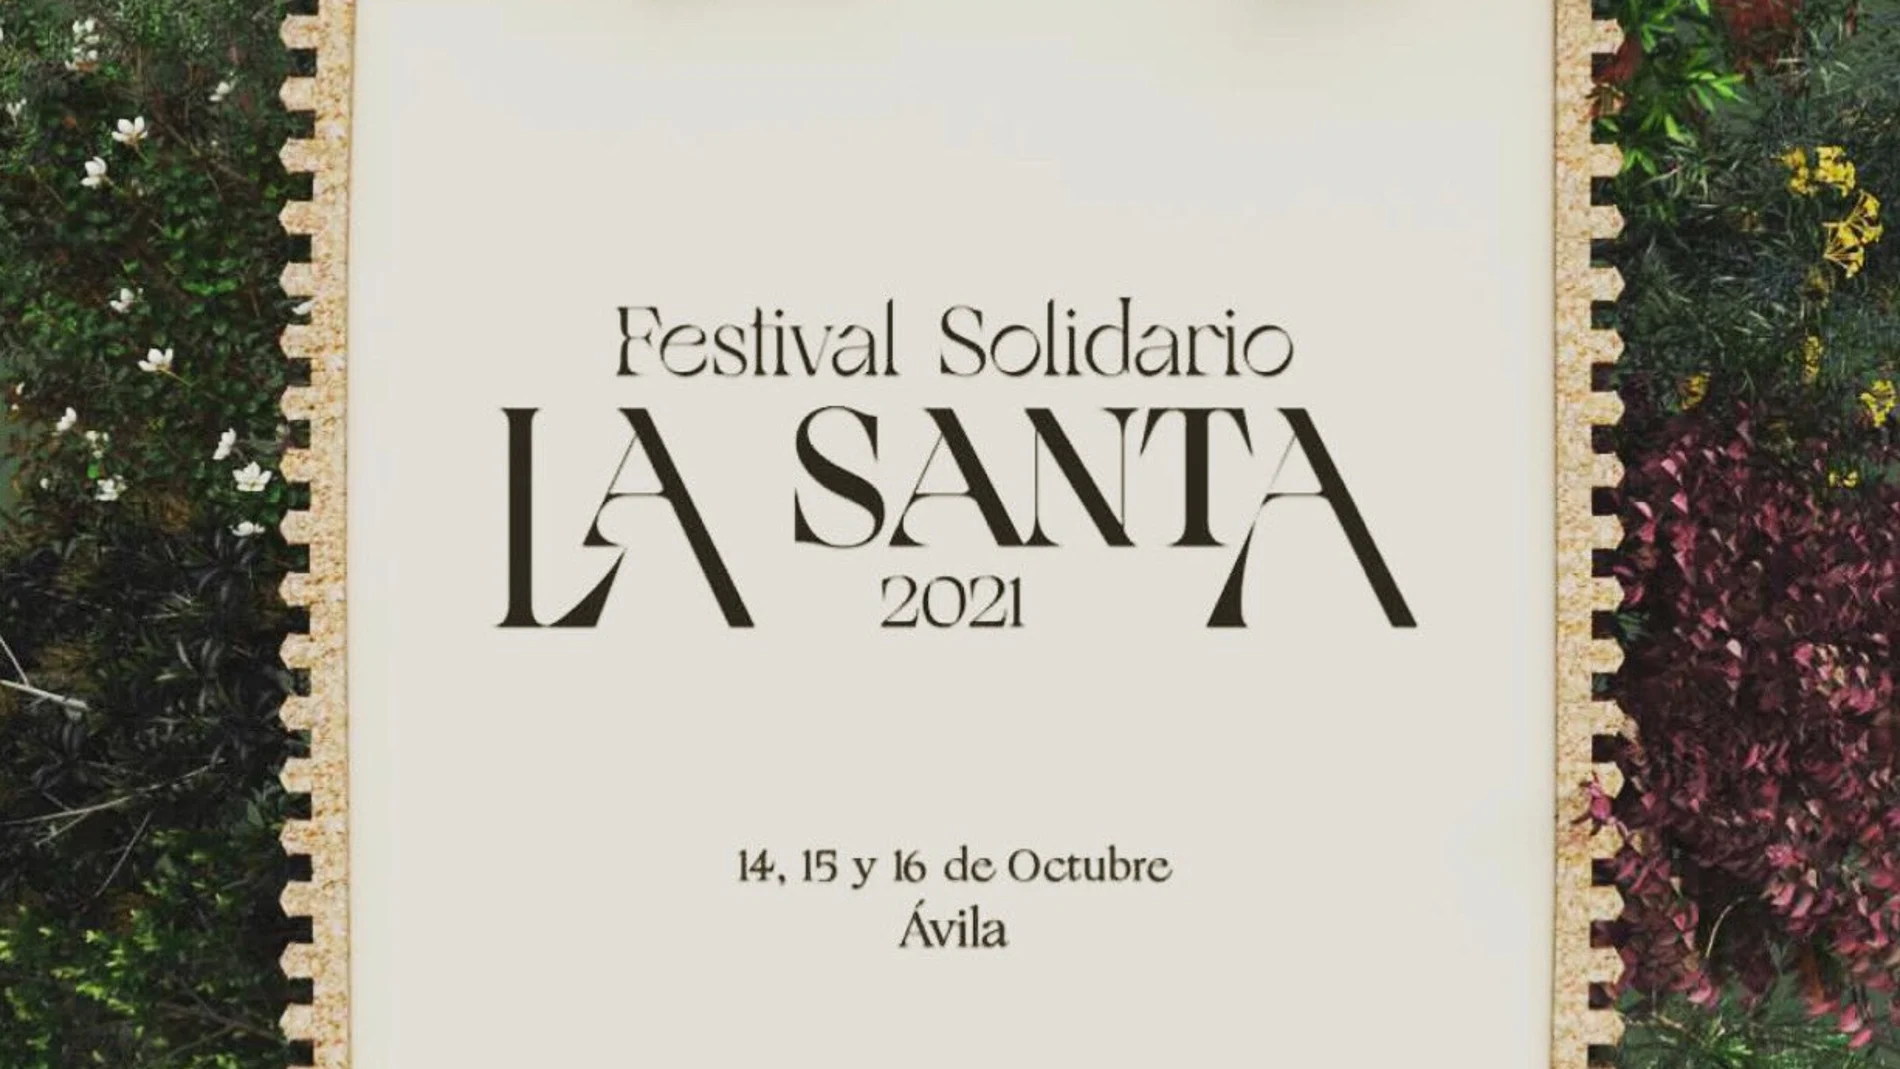 Cartel del Festival que se celebrará del 14 al 16 de octubre en Ávila